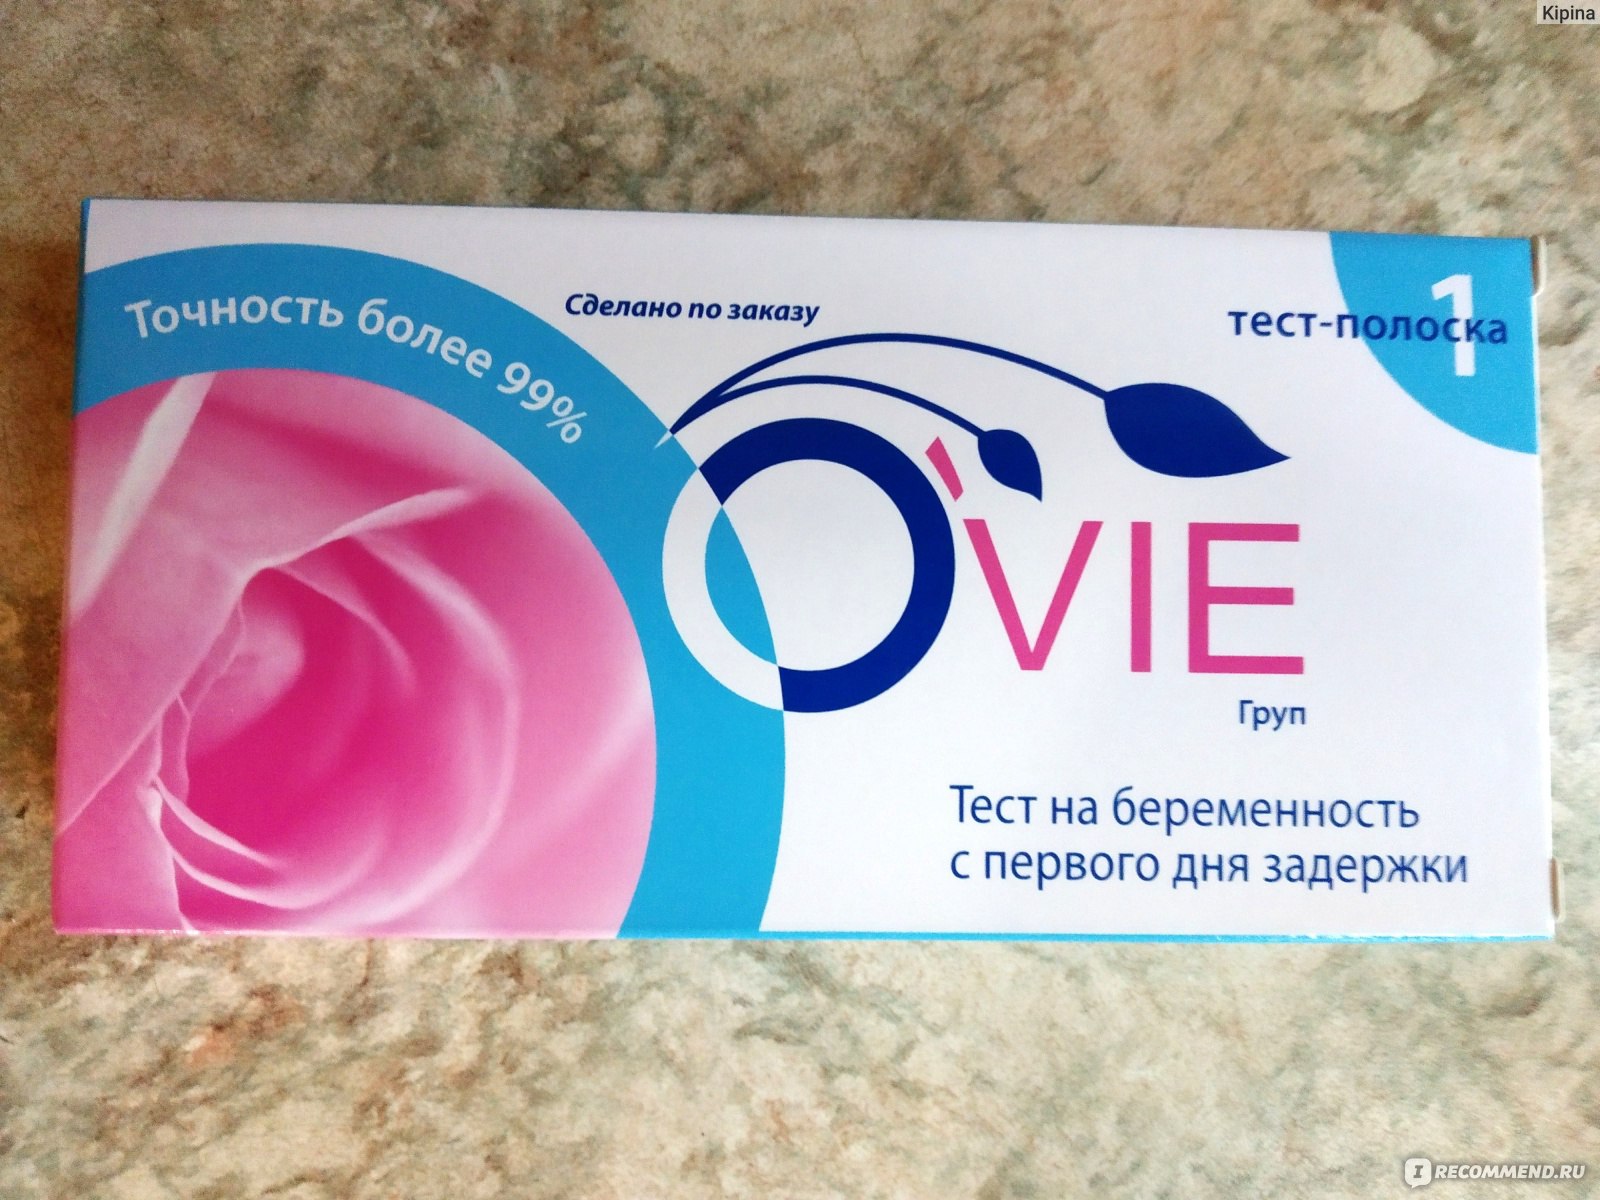 Тест на беременность ovie. Тест полоска Ovie. Ovie Test на беременность. Тест кассета на беременность Ovie. Тест на беременность Ovie Test 2 тест-полоски.